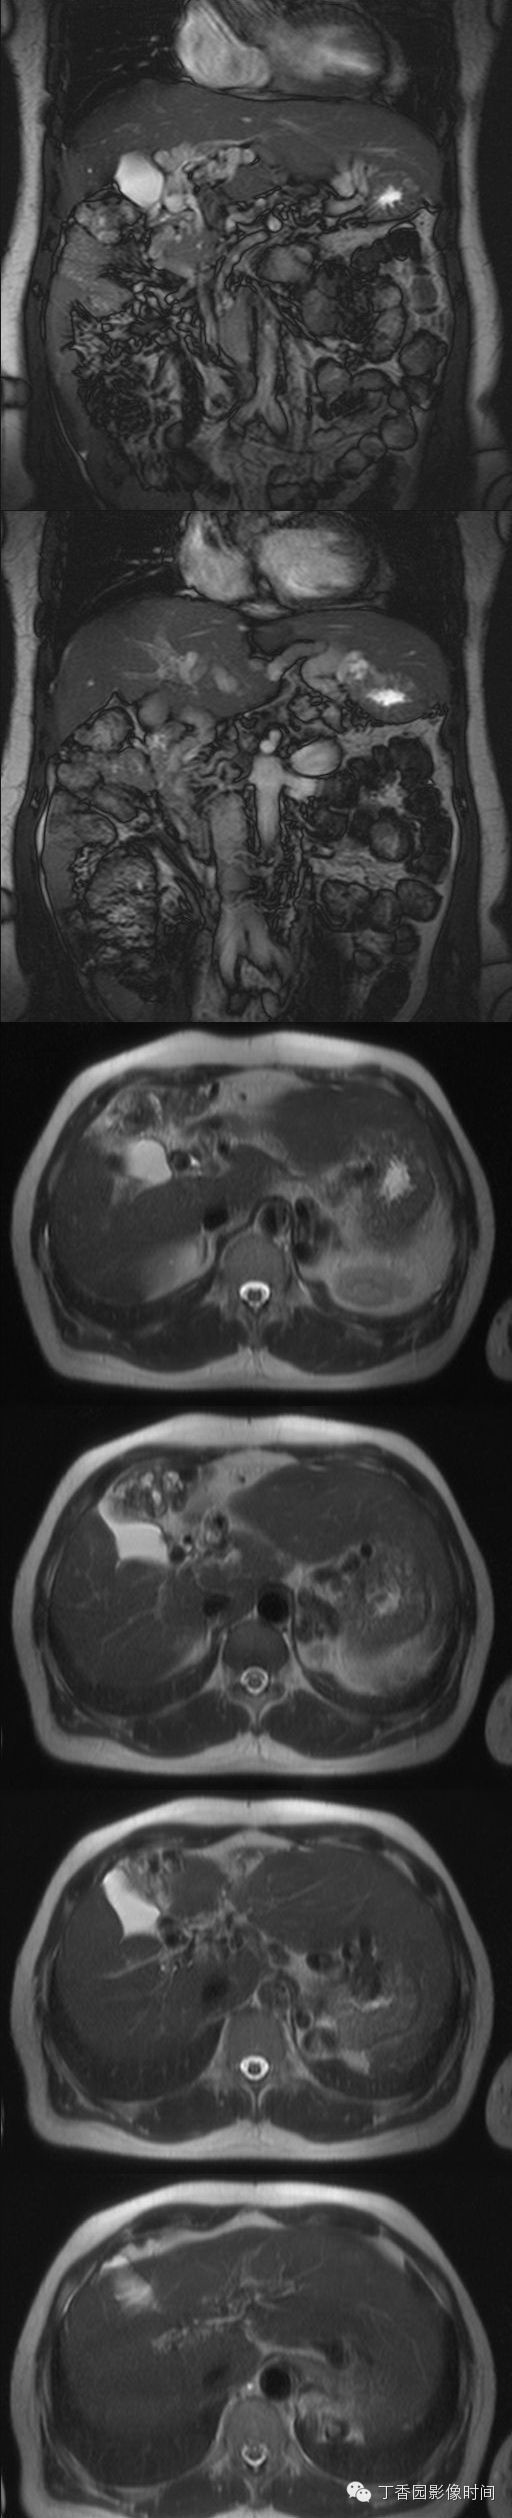 门静脉海绵样变的CT和MR表现